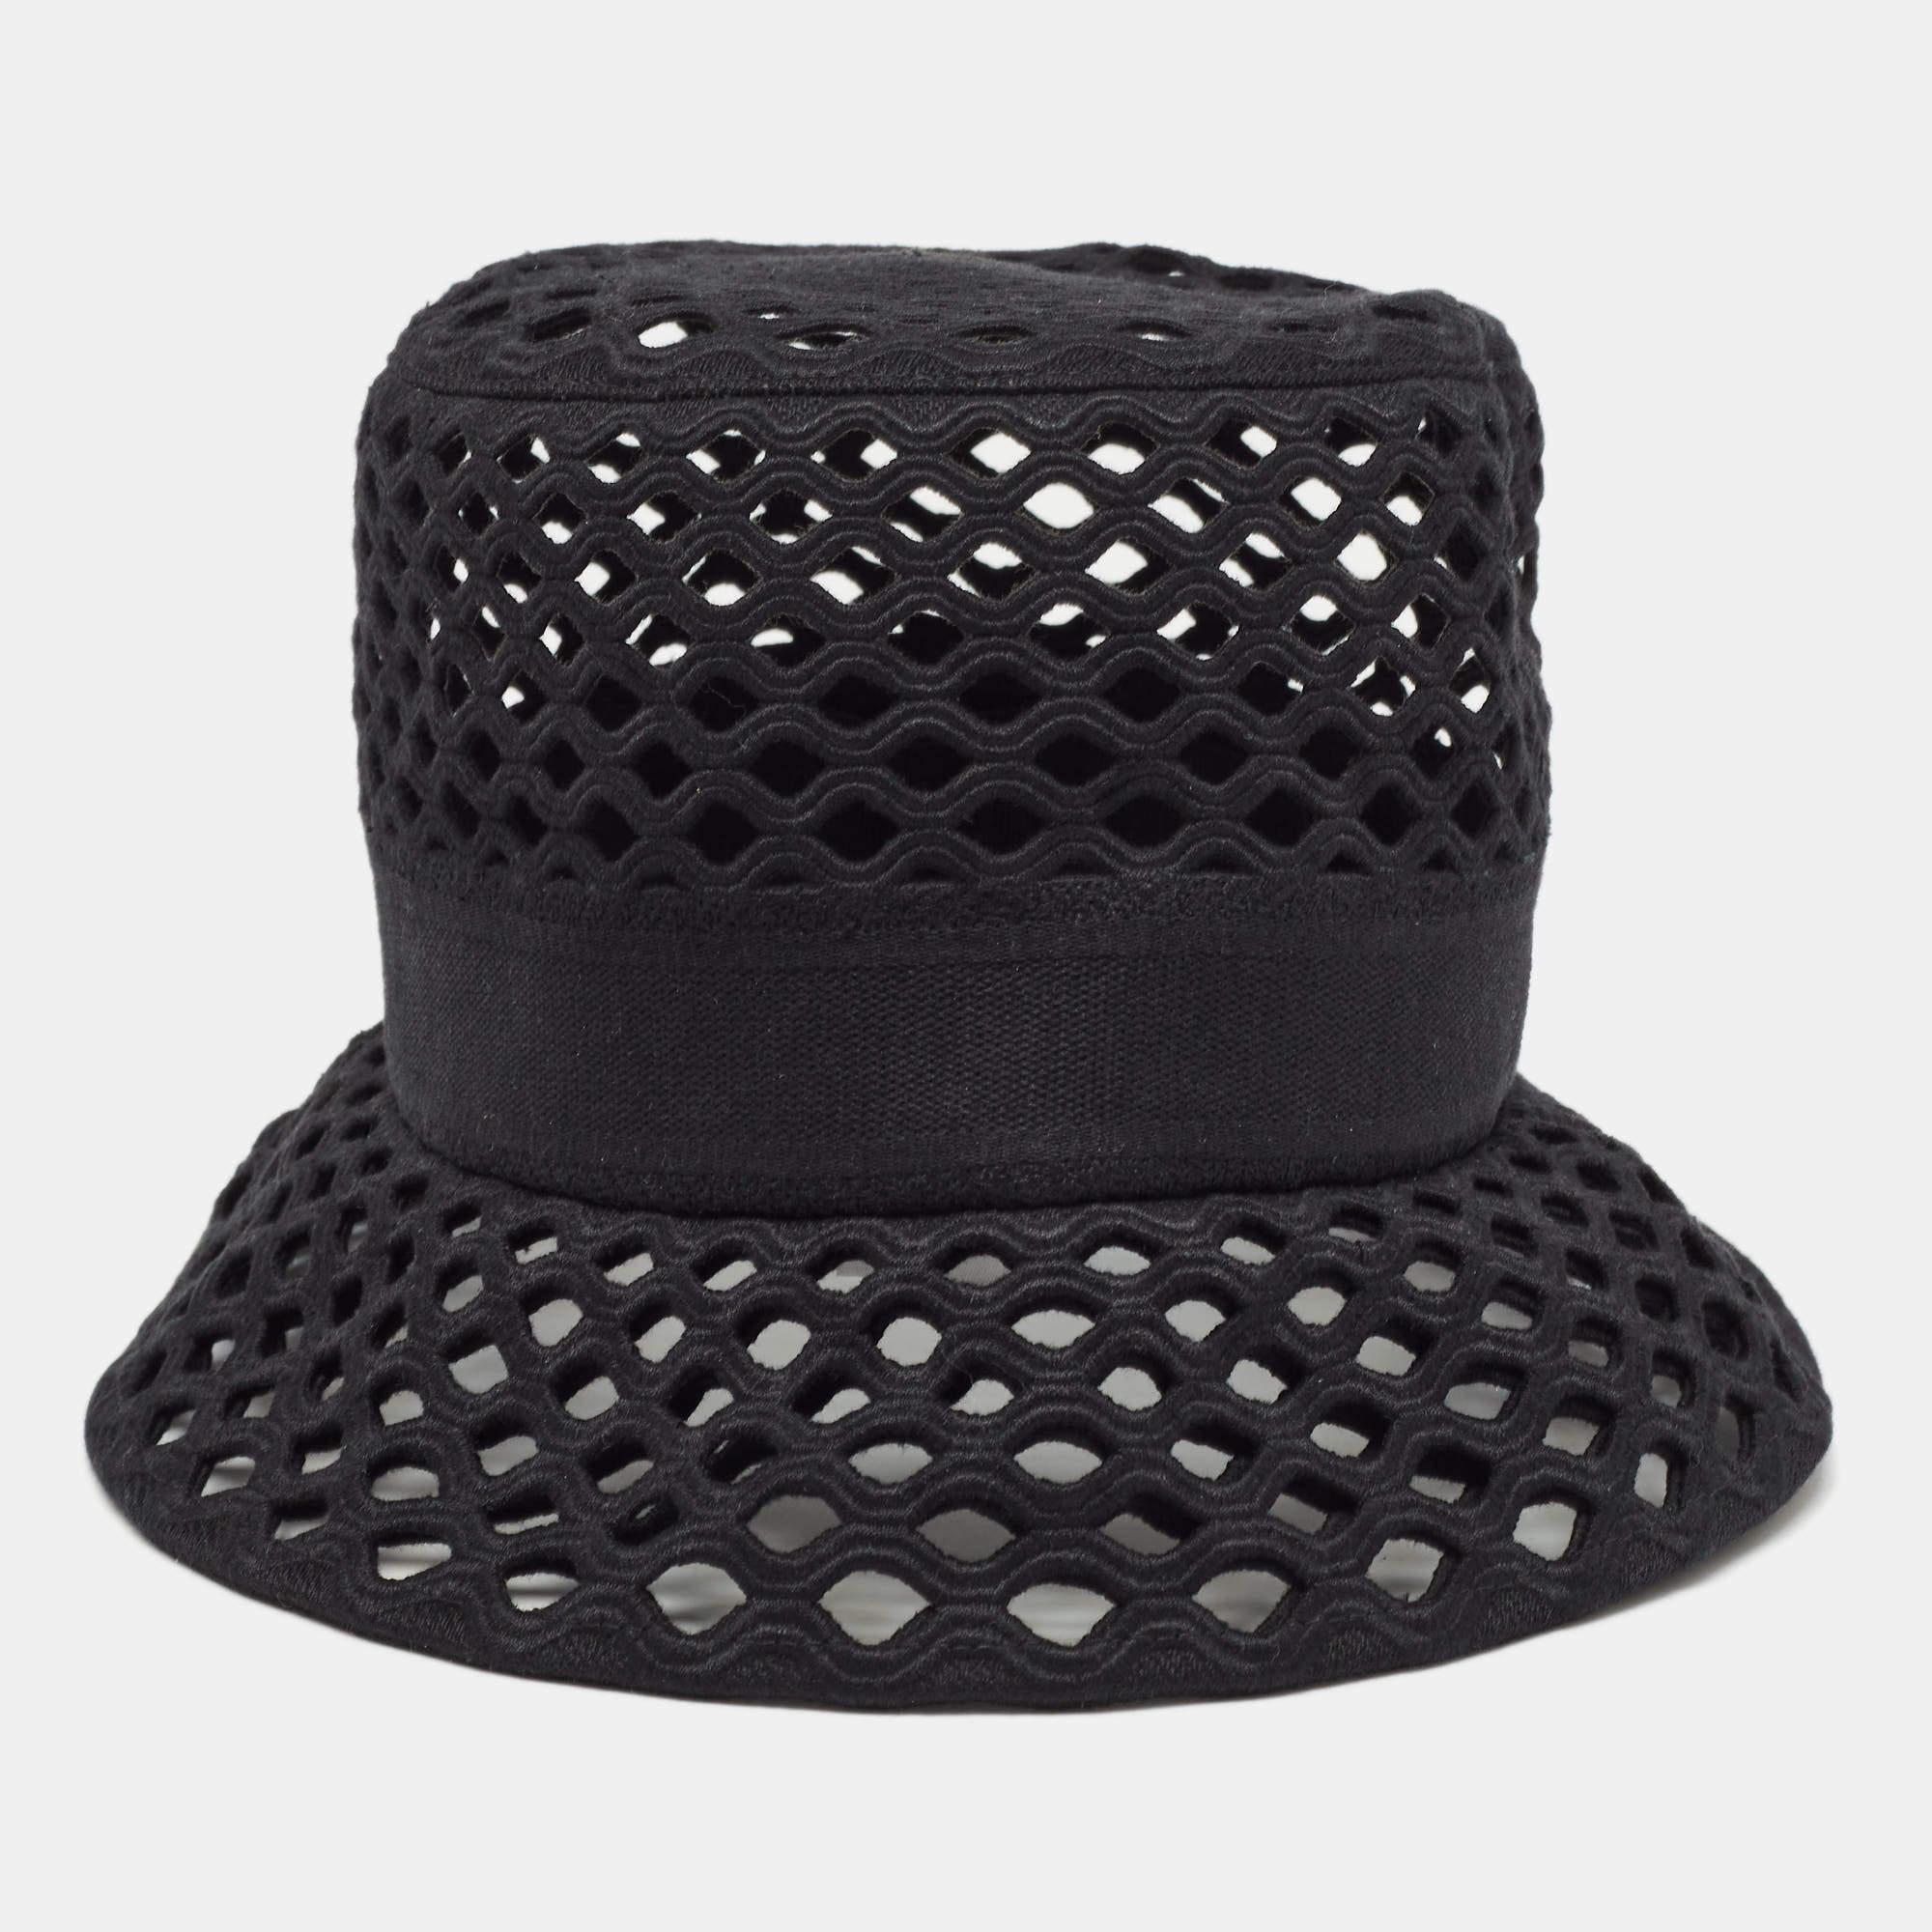 Women's Dior Black Mesh Bucket Hat Size 58